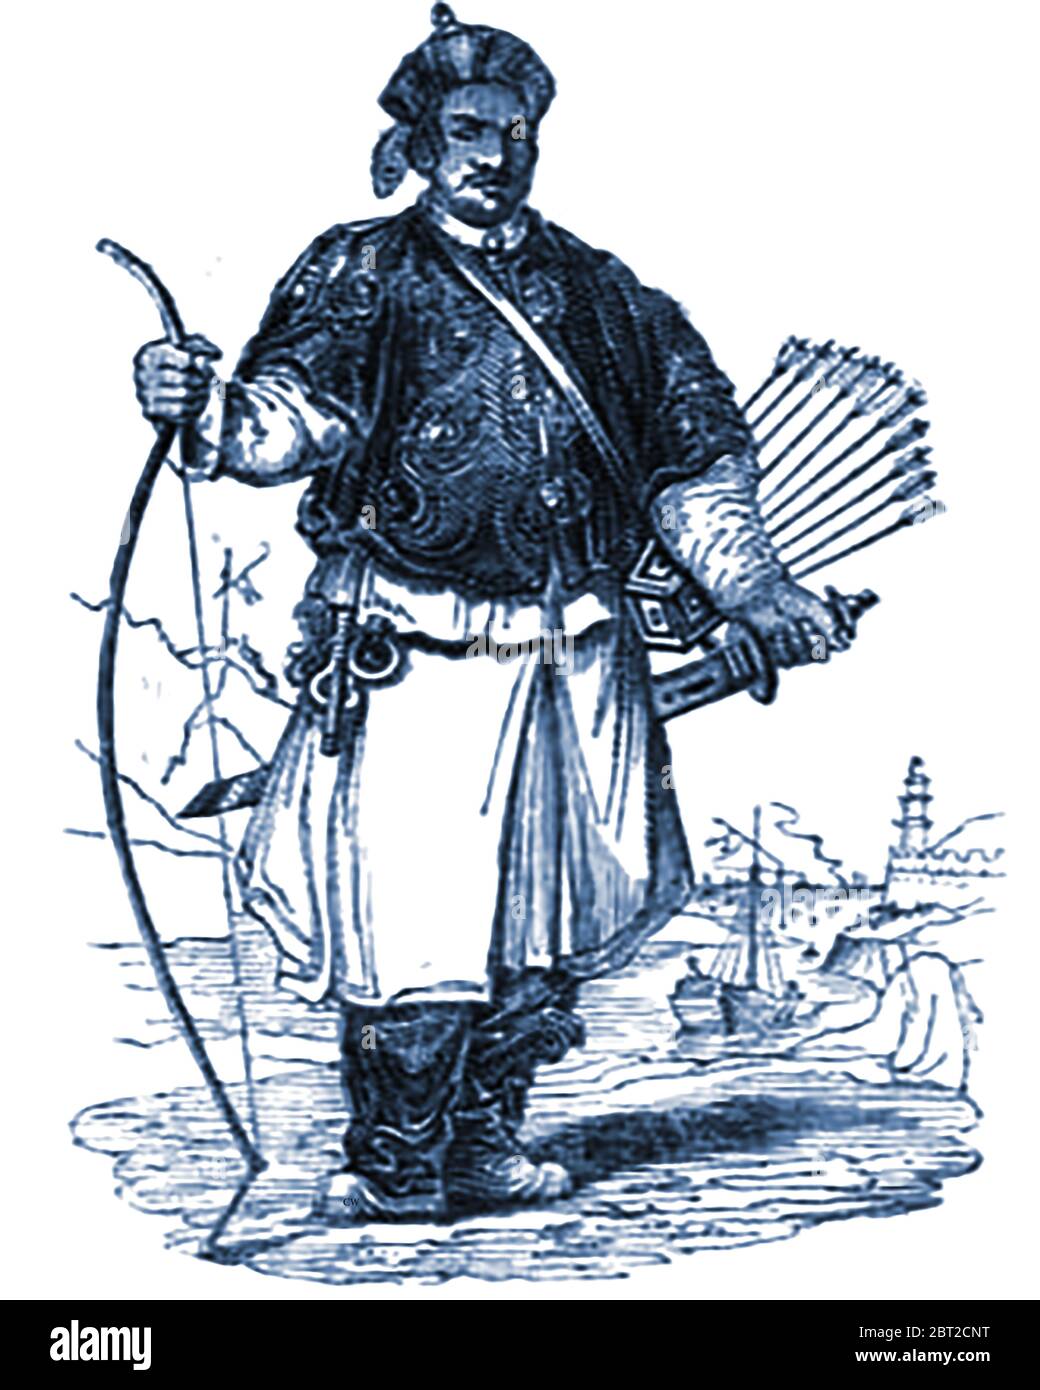 Illustration de 1840 montrant un soldat d'artillerie chinois (bowman) dans l'uniforme de l'époque. Banque D'Images